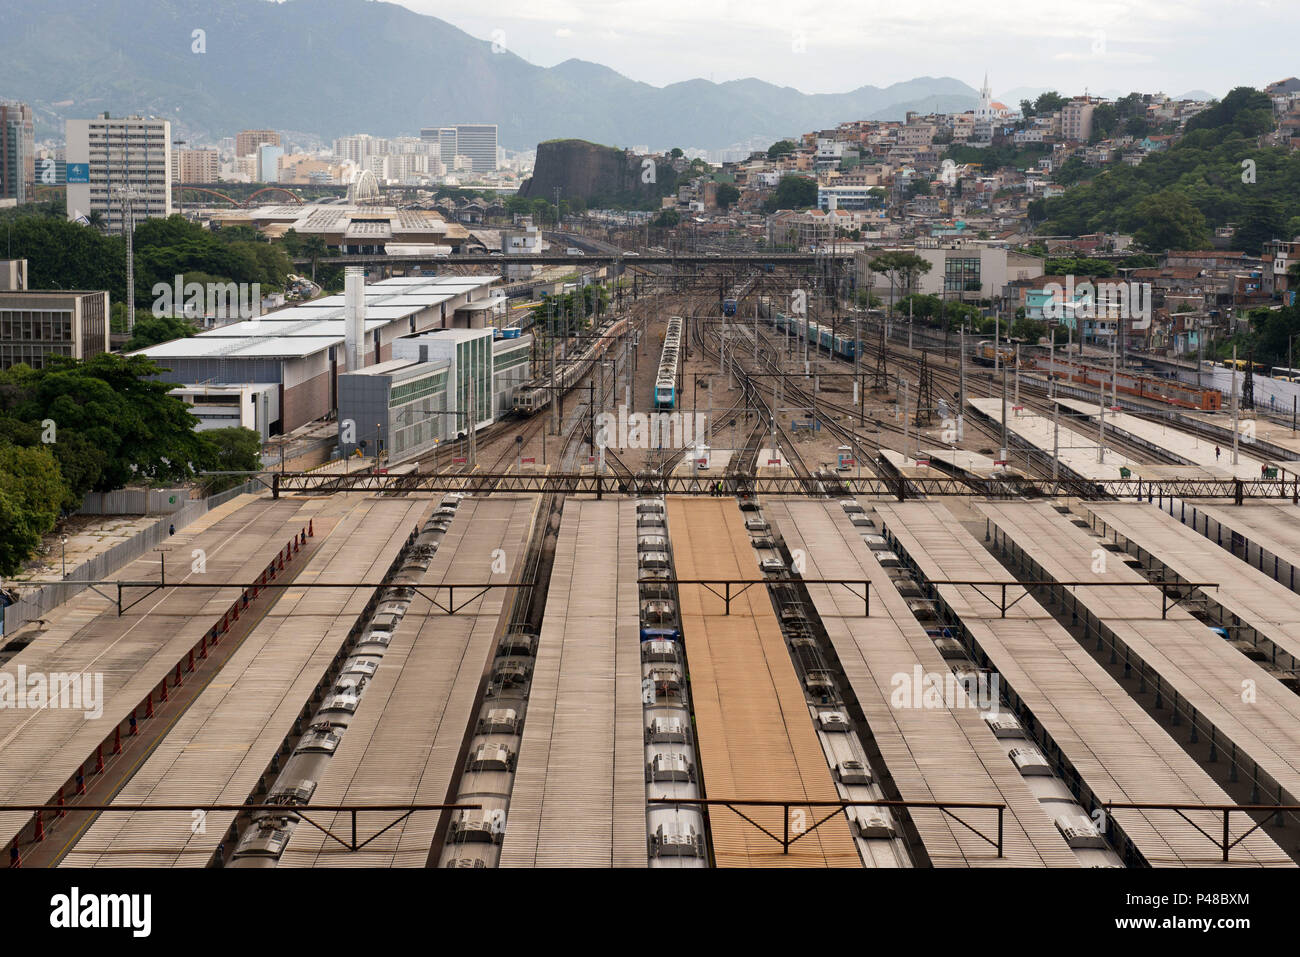 RIO DE JANEIRO, RJ - 31.03.2015: Estação de trem da Central com trem entrando,  visto a partir da Torre da Central do Brasil. Foto: Celso Pupo / Fotoarena Stock Photo